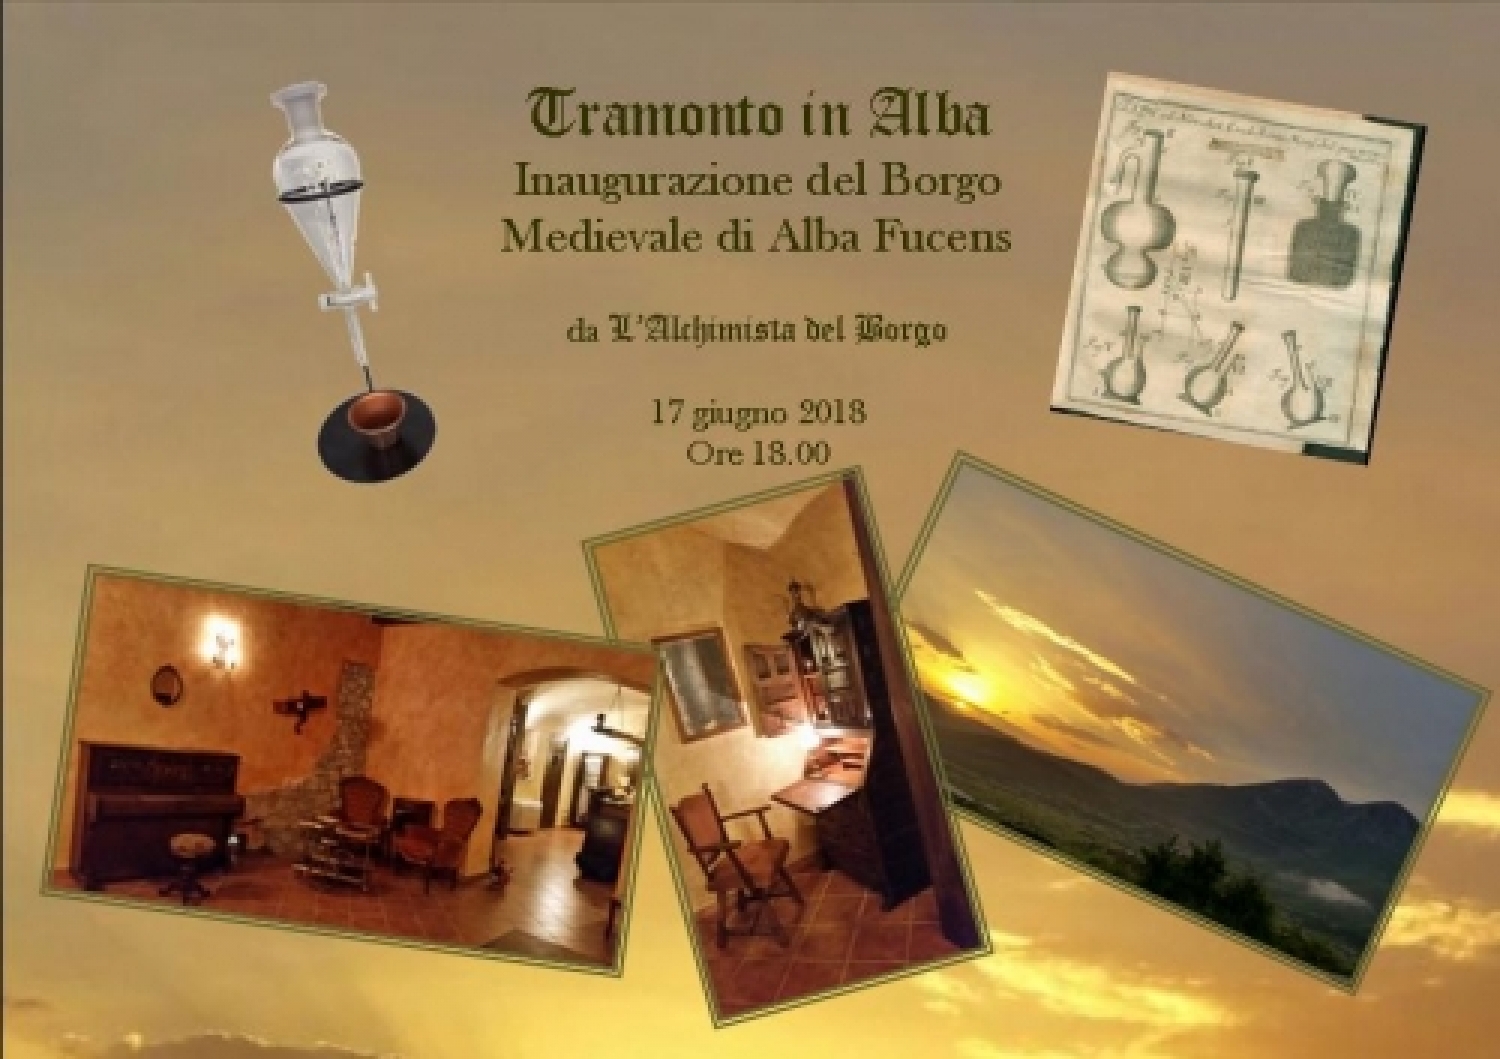 Invito Inaugurazione Borgo Medievale di Alba Fucens.jpg